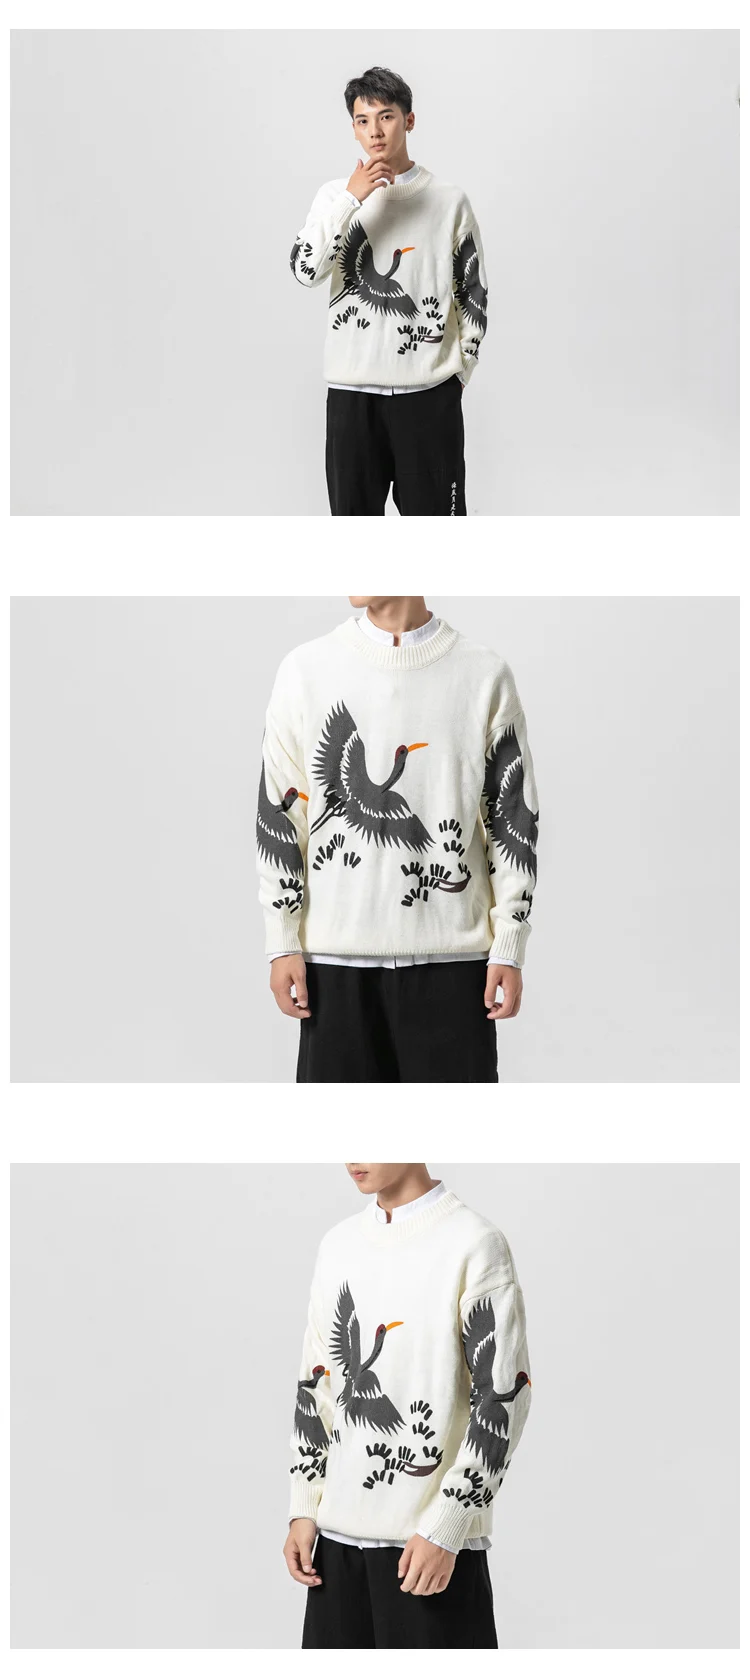 Sinicism магазин Мужская одежда мужские хлопковые уличные свитера мужские повседневные топы с вышивкой в китайском стиле осенние